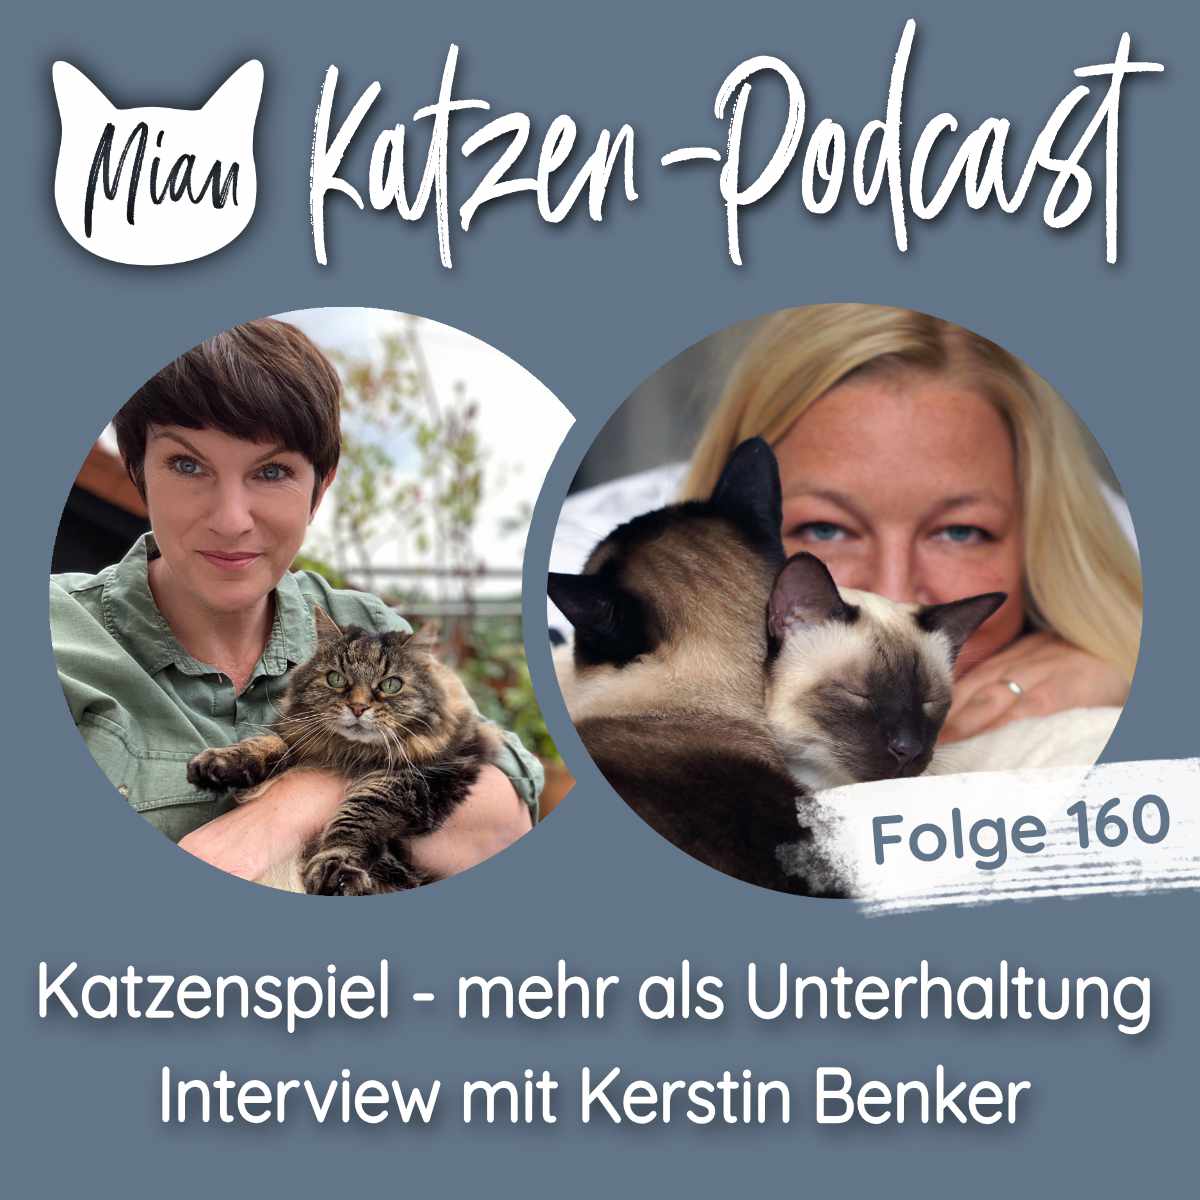 Katzenspiel ist mehr als Unterhaltung - Interview mit Kerstin Benker | MKP160